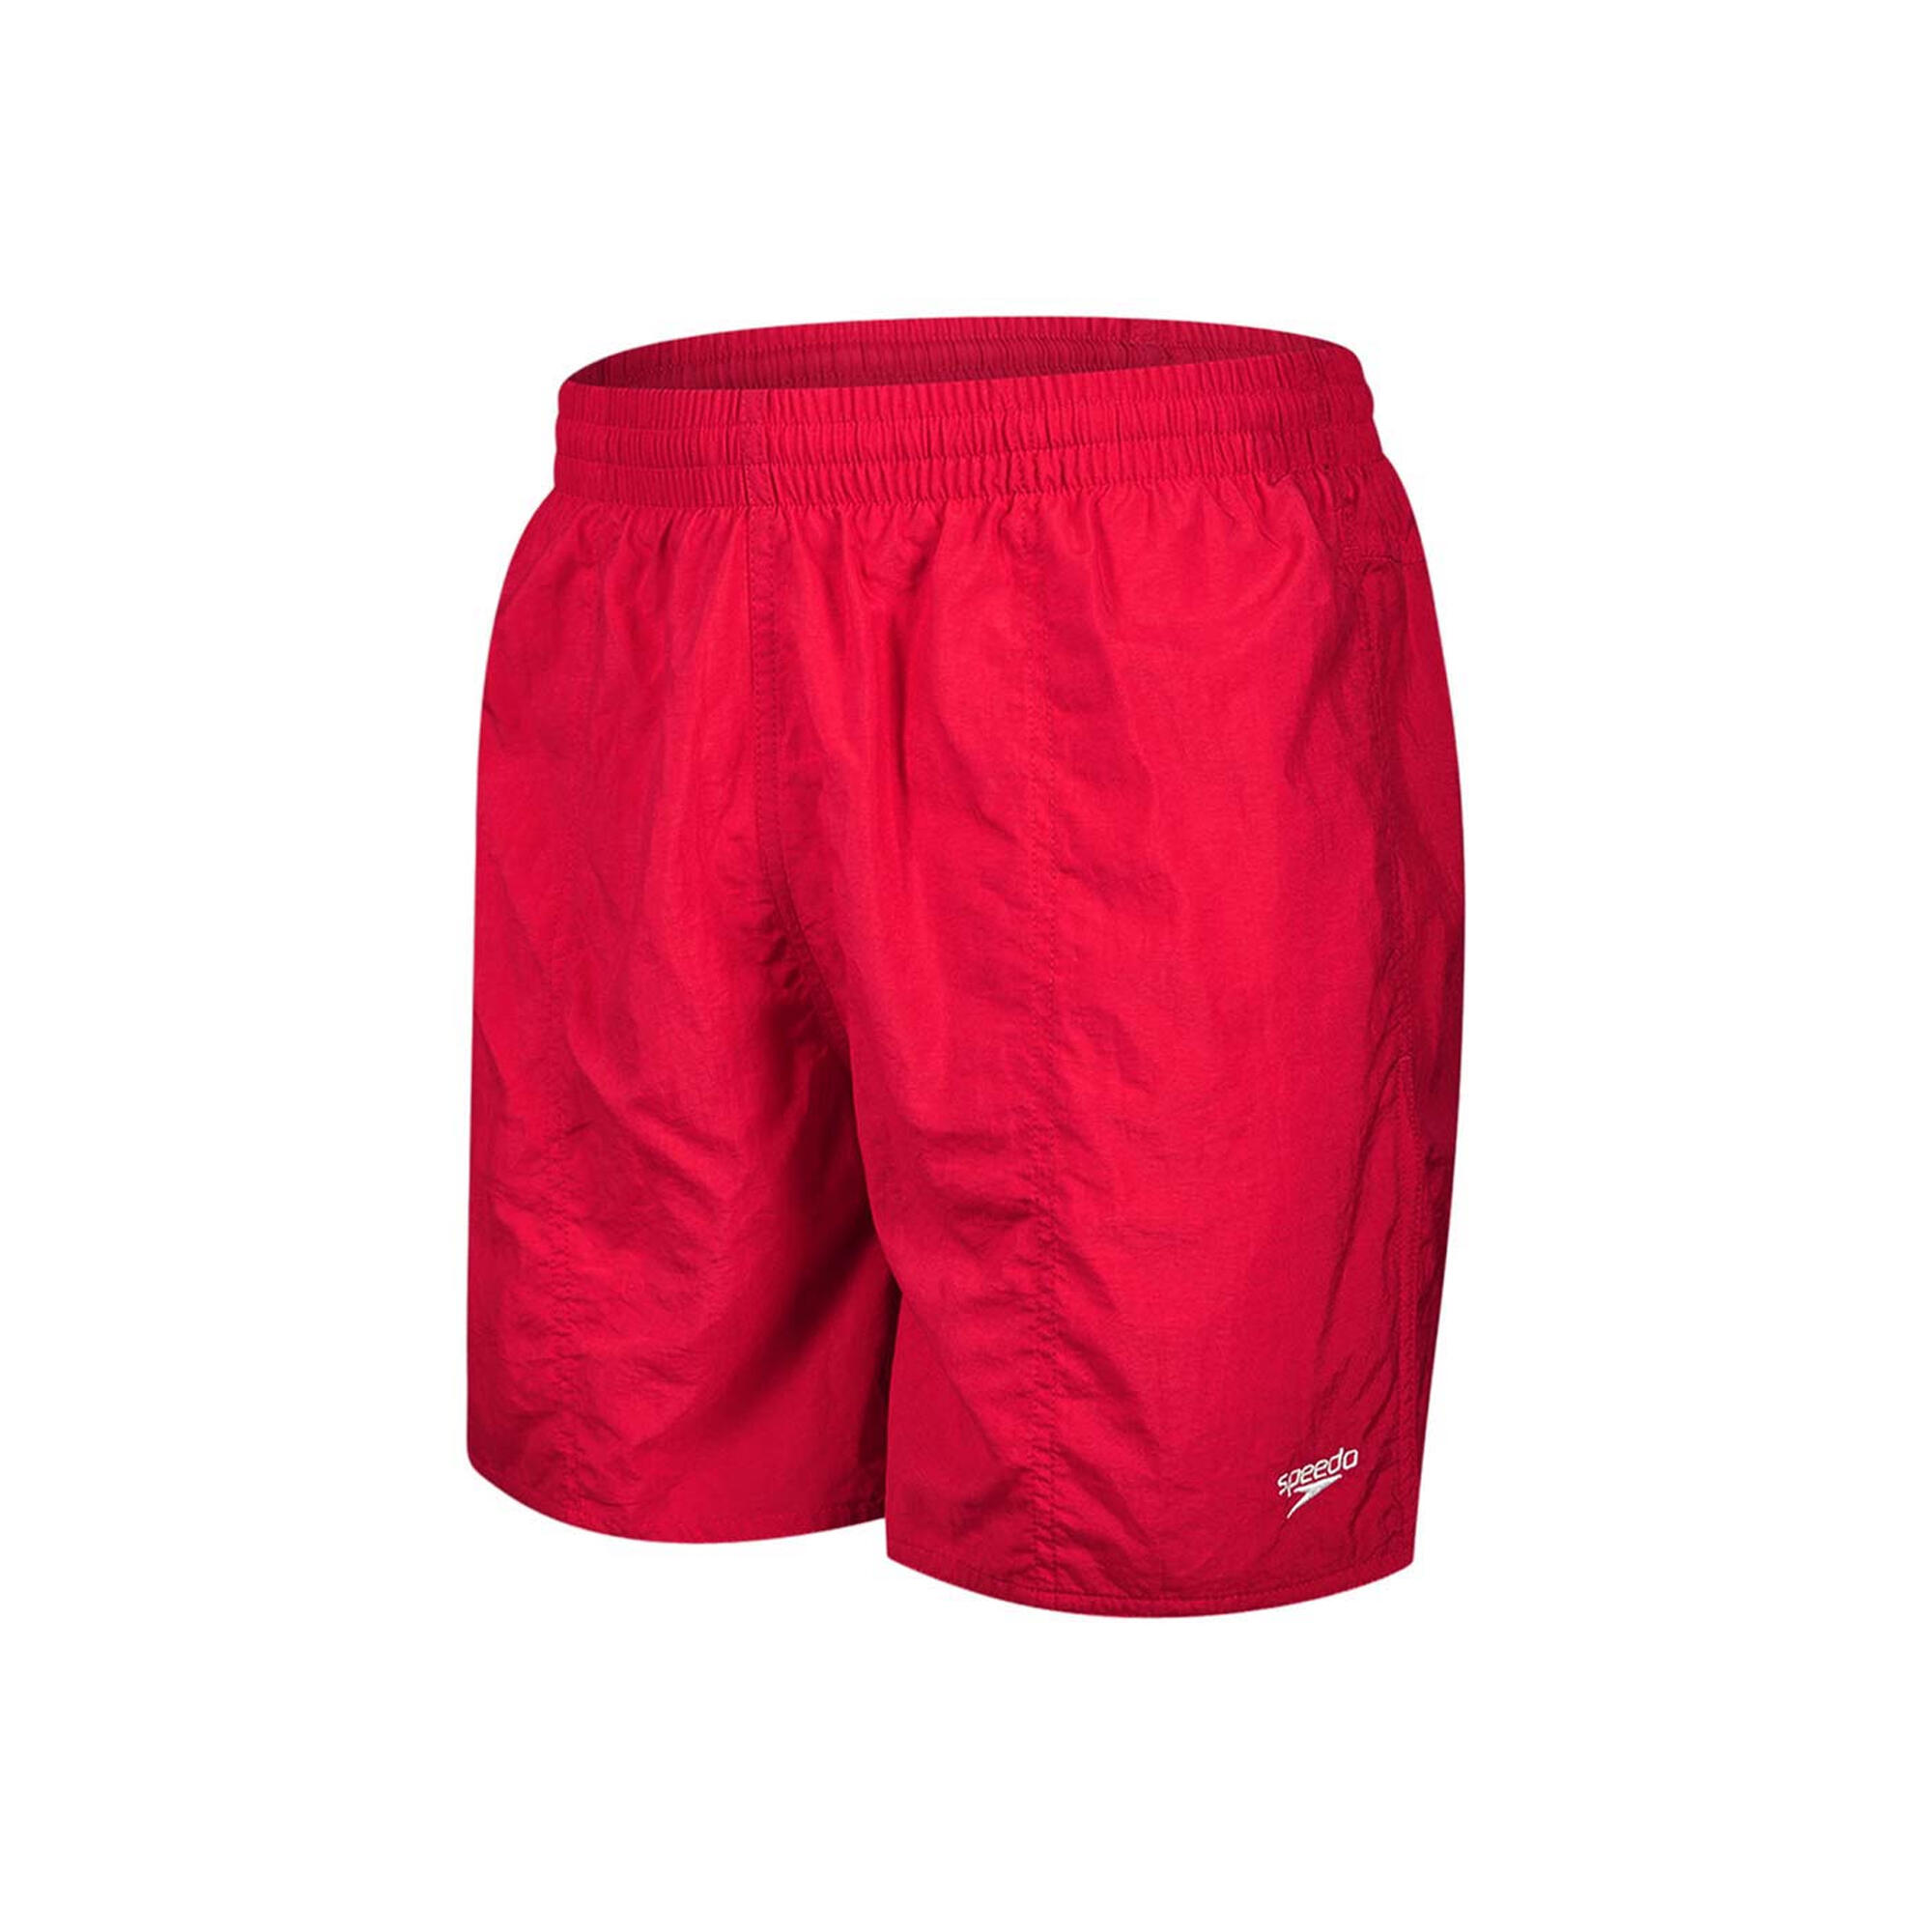 SPEEDO Childrens/Kids Essential Swim Shorts (Red)